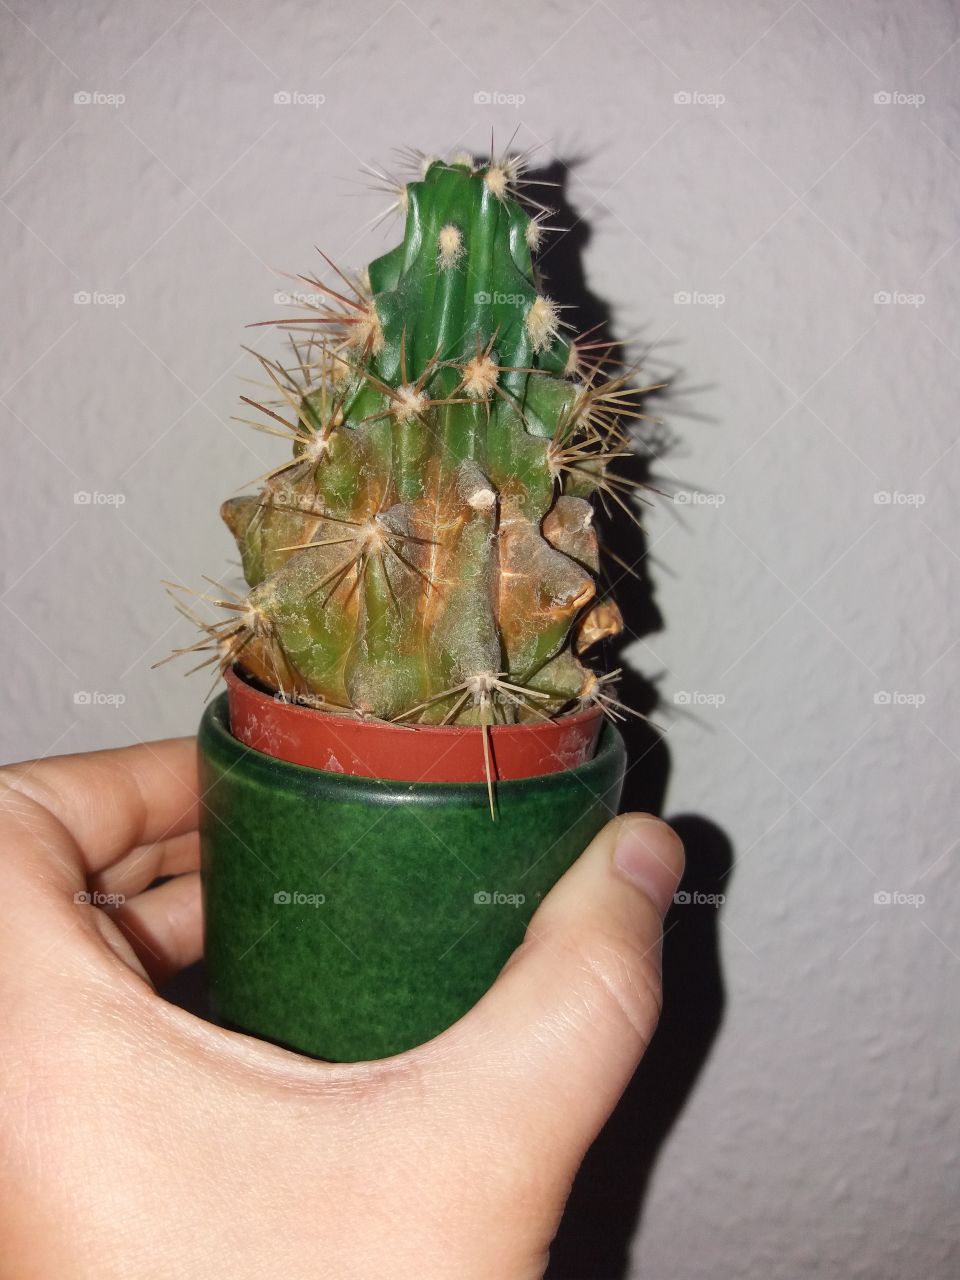 A little cactus